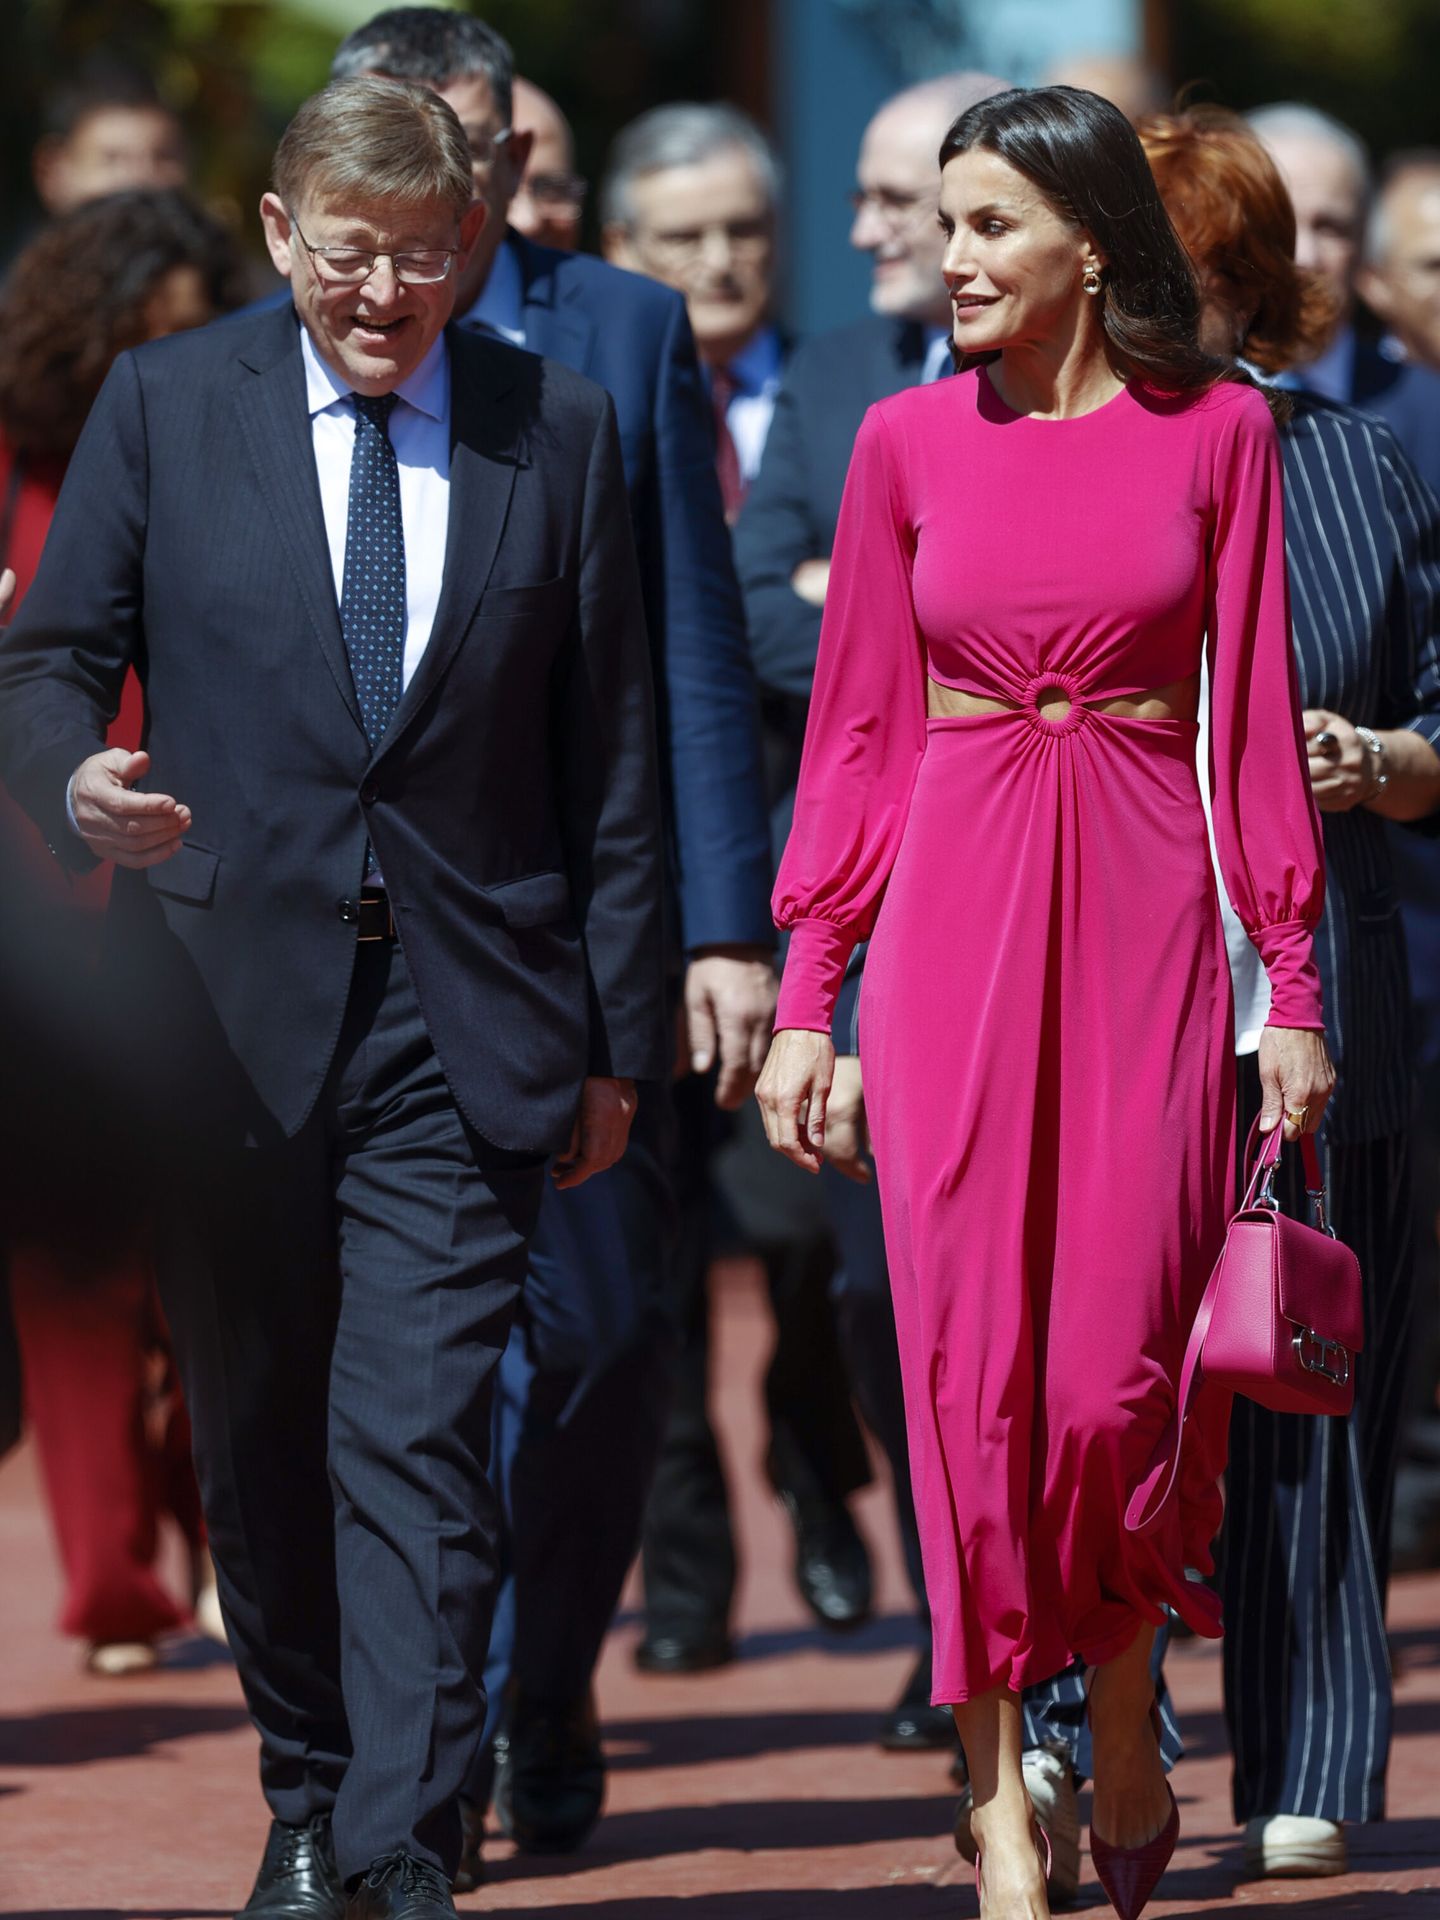 La reina Letizia, en la imagen junto a Ximo Puig, presumiendo de abdominales. (EFE/Kai Försterling)